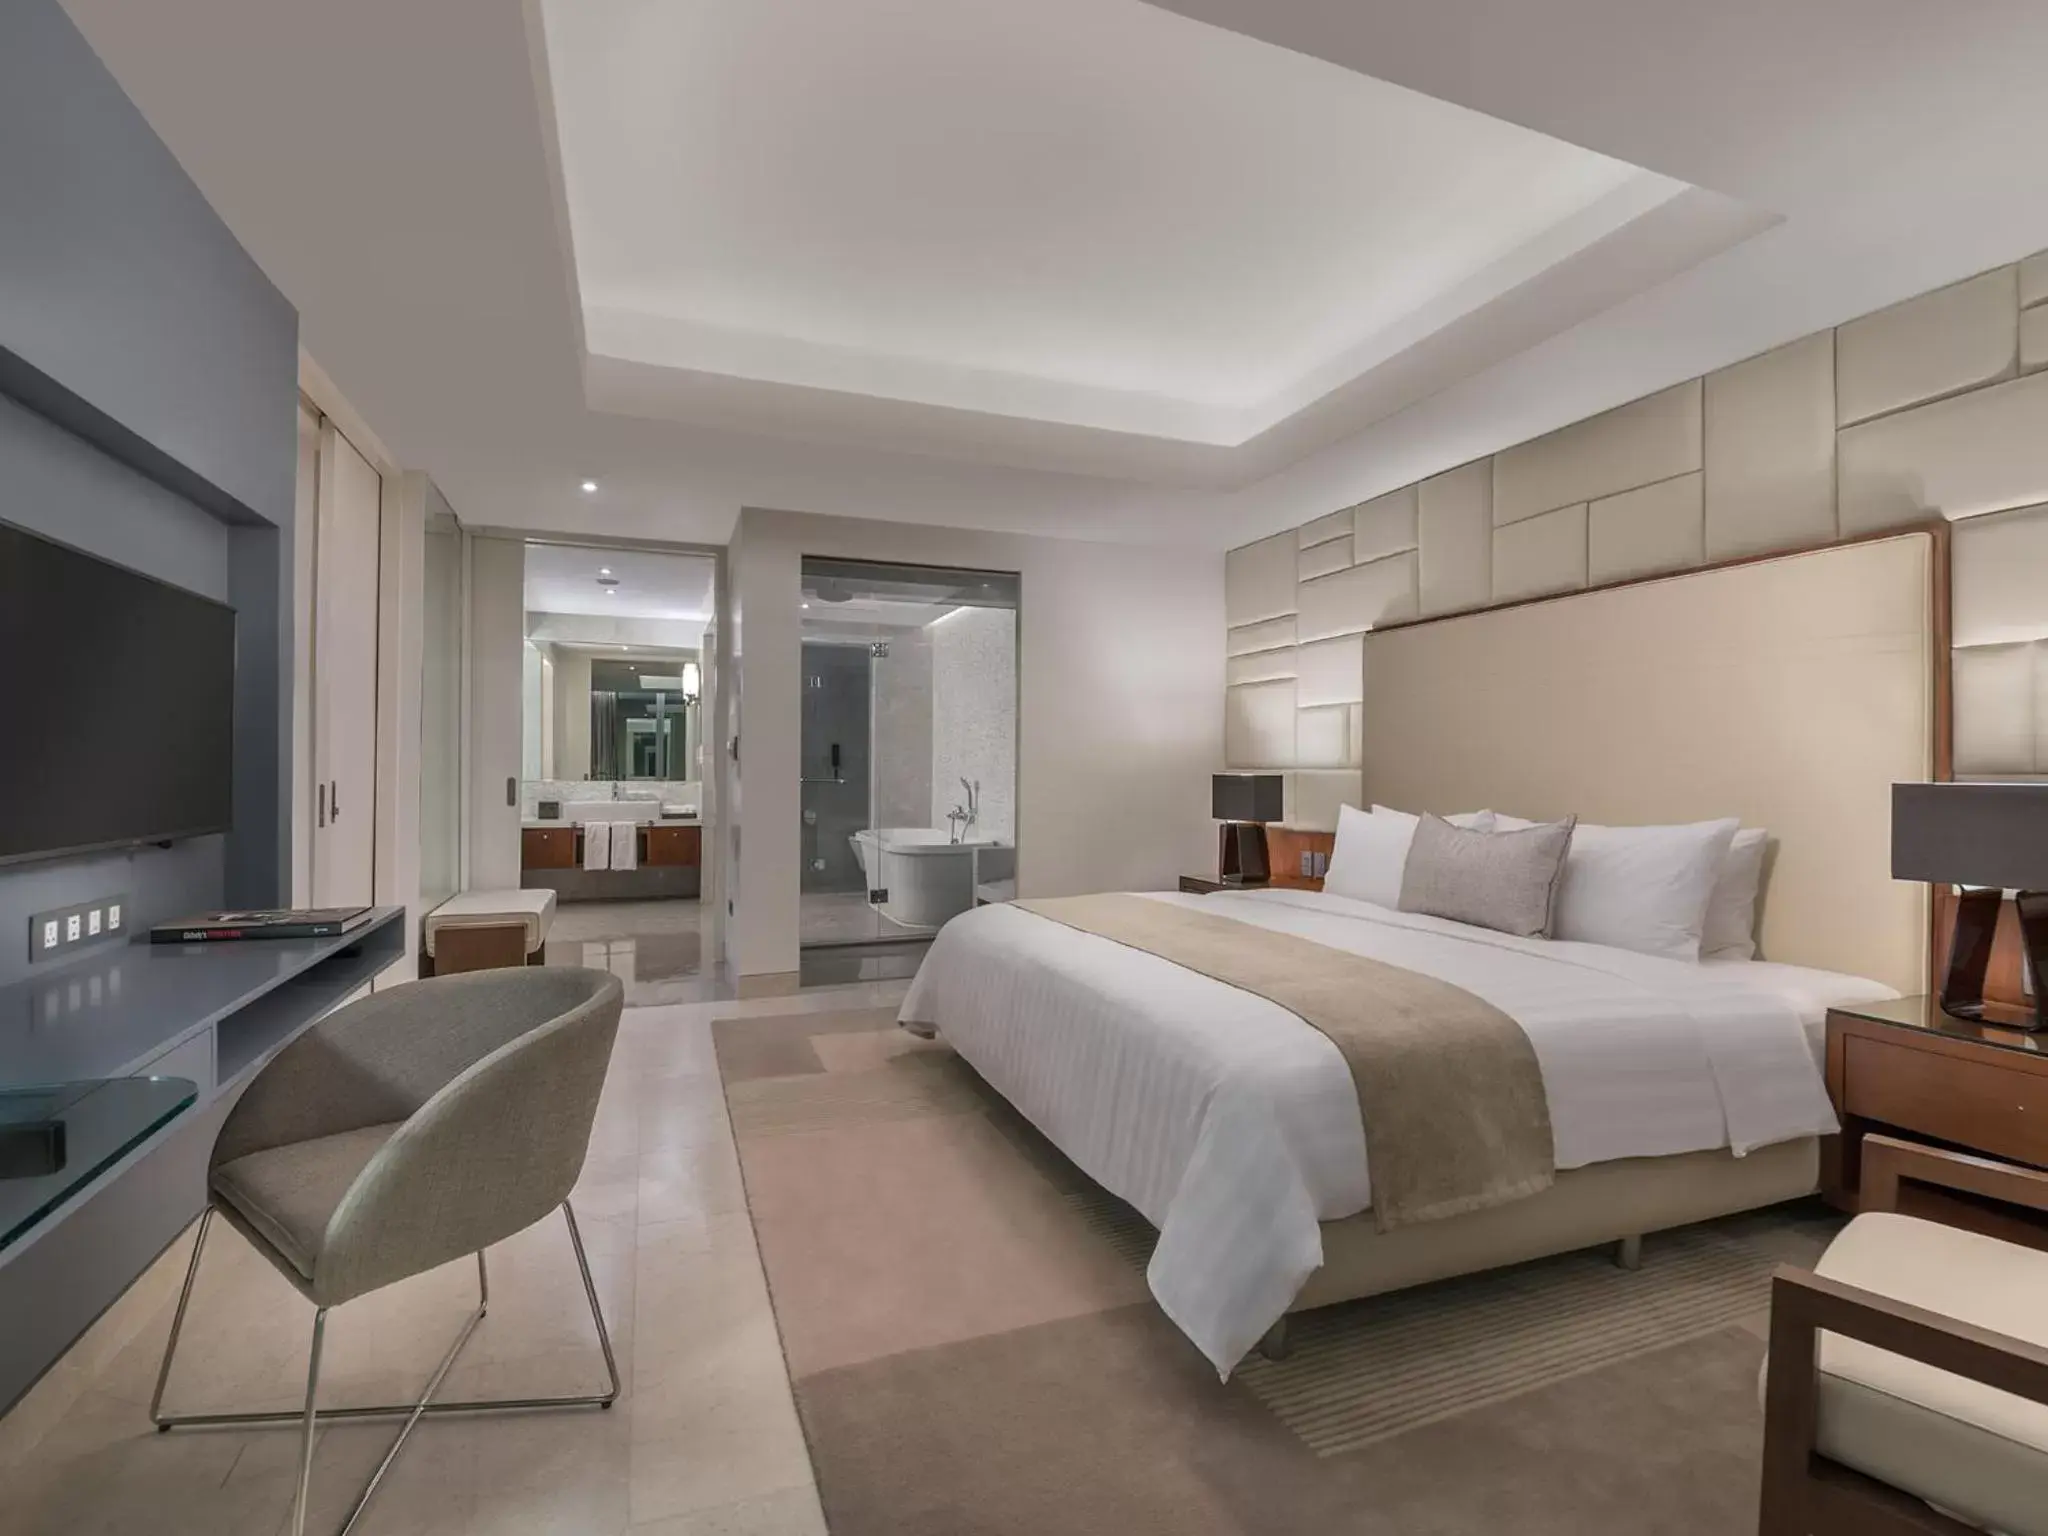 Bed, Room Photo in Richmonde Hotel Iloilo